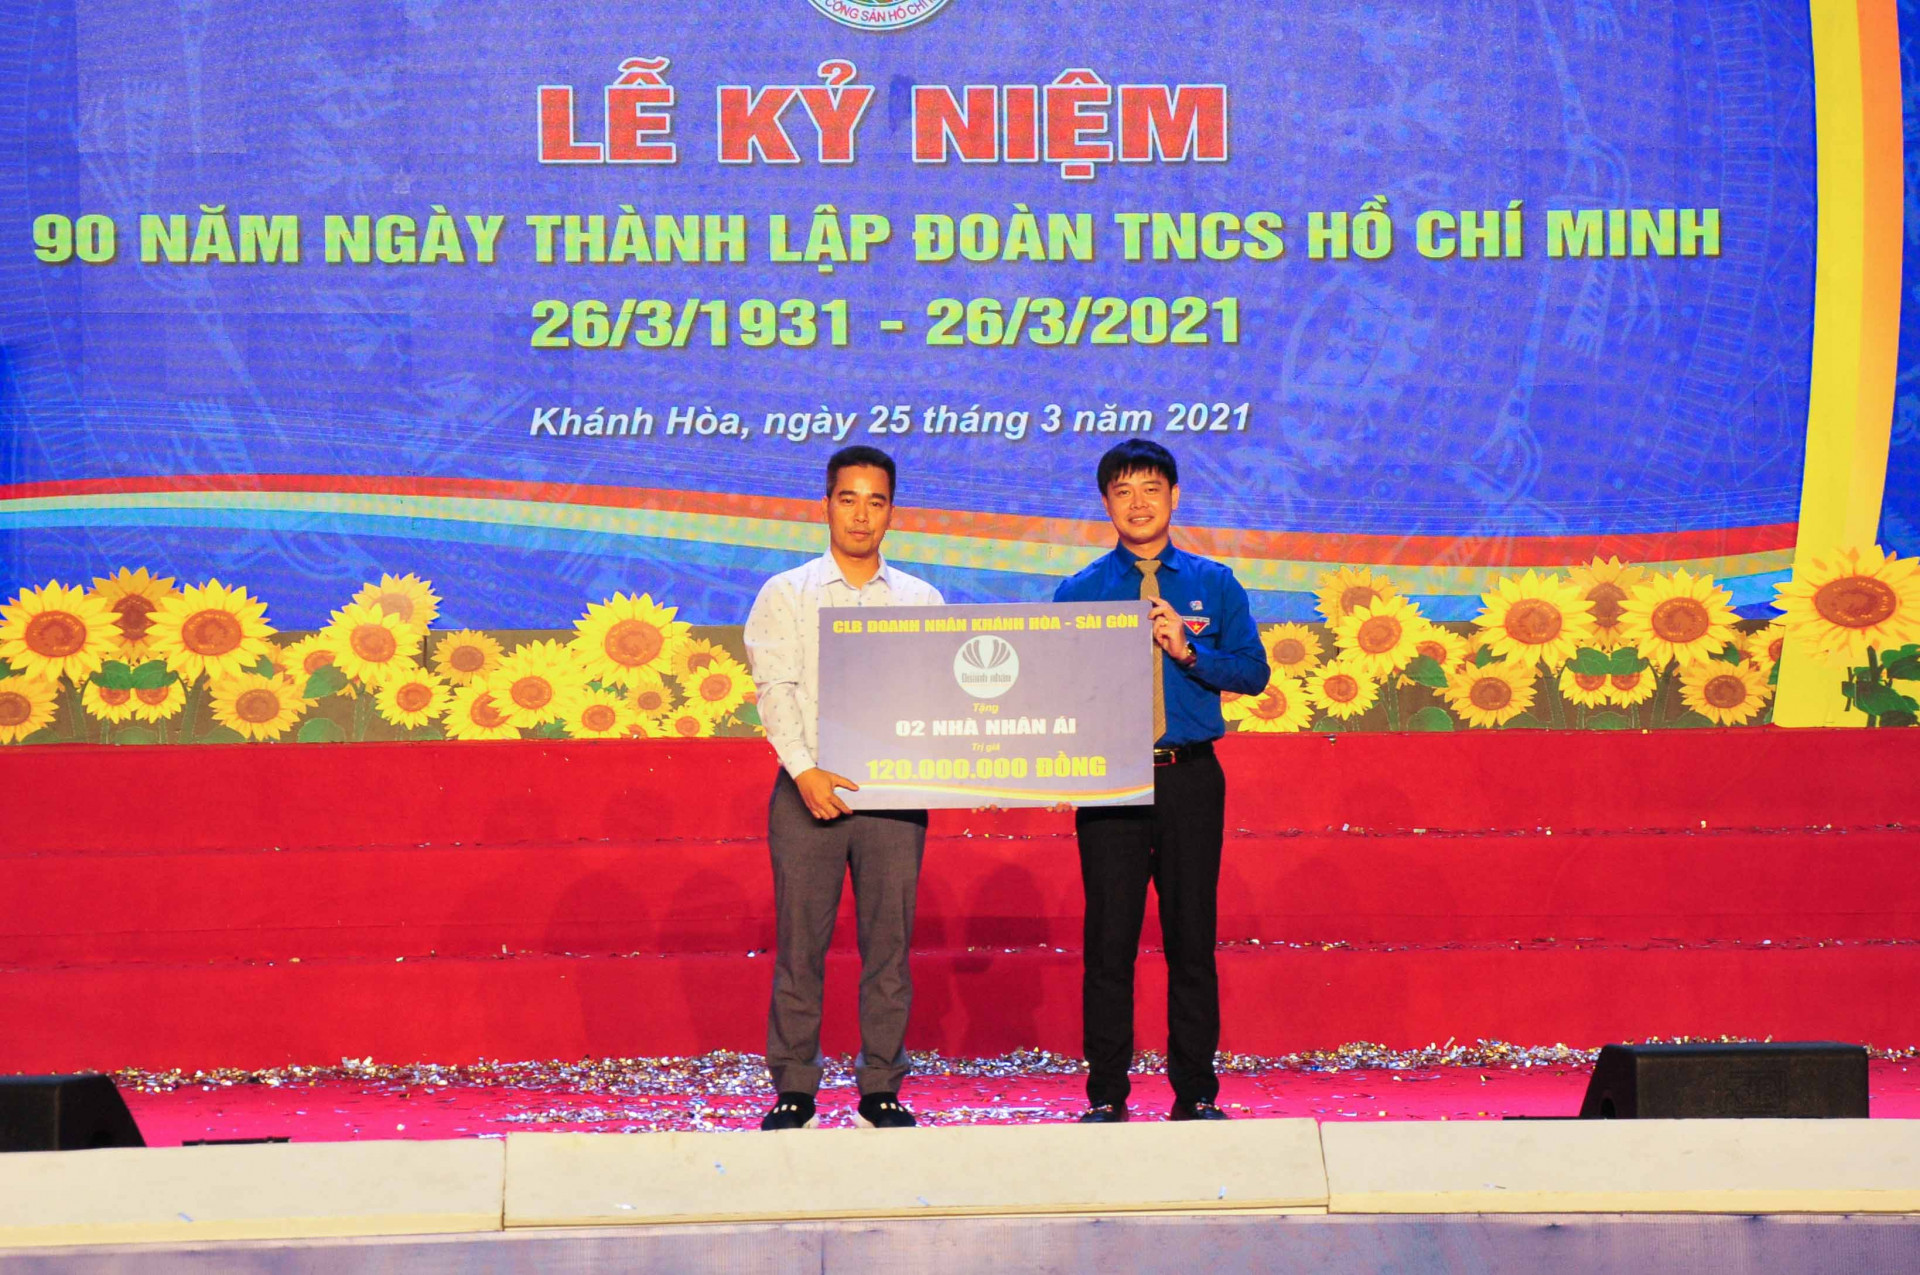 Câu lạc bộ Doanh nhân Khánh Hoà - Sài Gòn hỗ trợ Tỉnh đoàn 120 triệu đồng để xây 2 Nhà nhân ái cho cựu cán bộ Đoàn và cựu thanh niên xung phong khó khăn